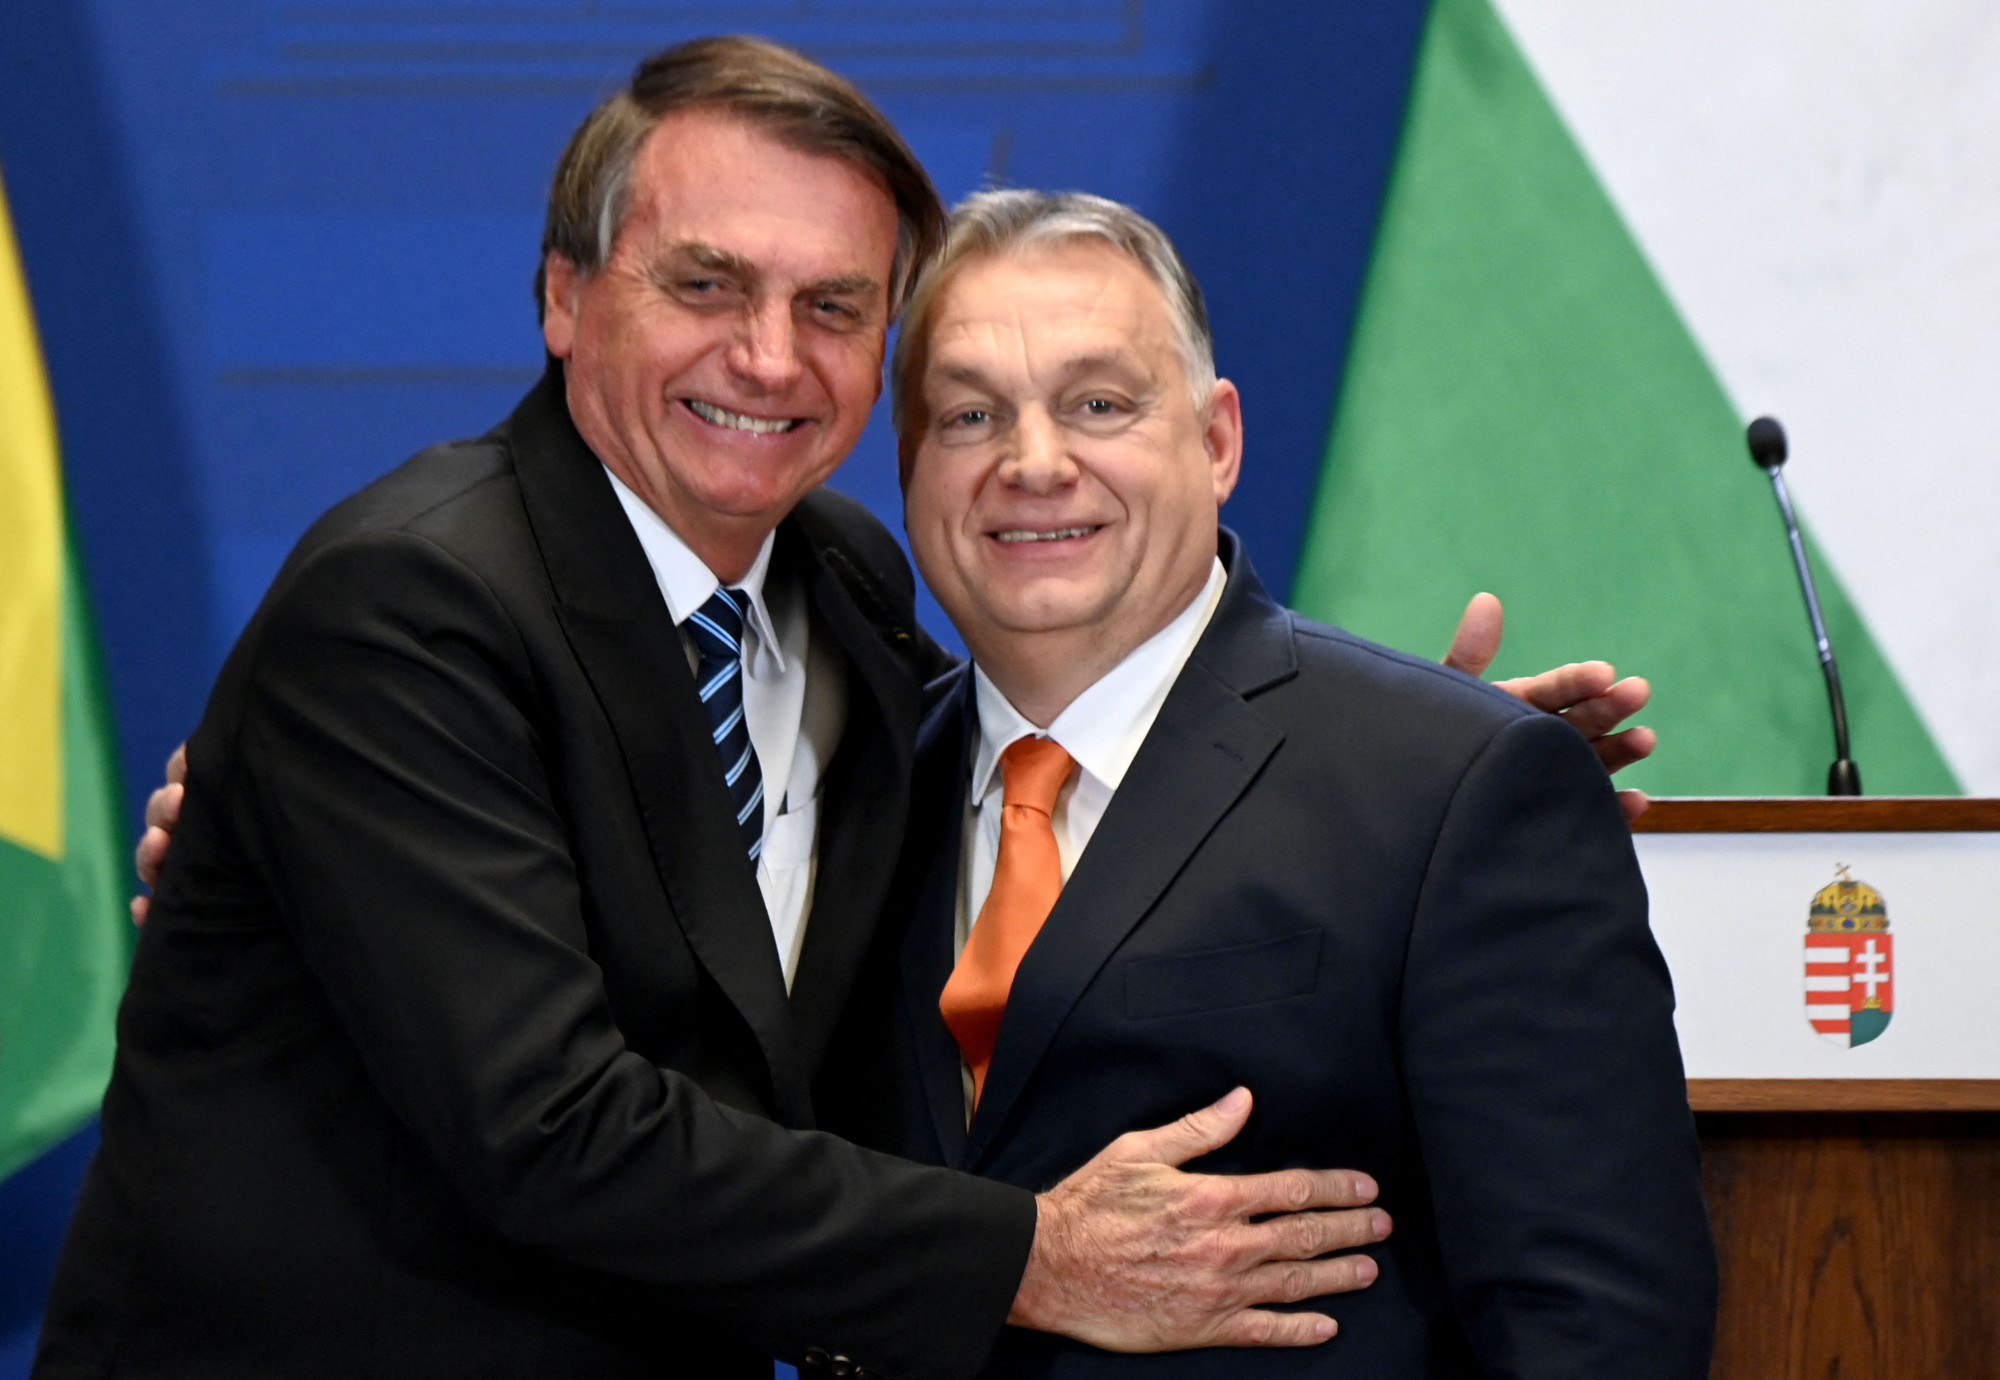 Bolsonarónak kampányol Orbán: Sok vezetővel találkoztam, de kevés olyan kiemelkedőt láttam, mint az önök elnöke